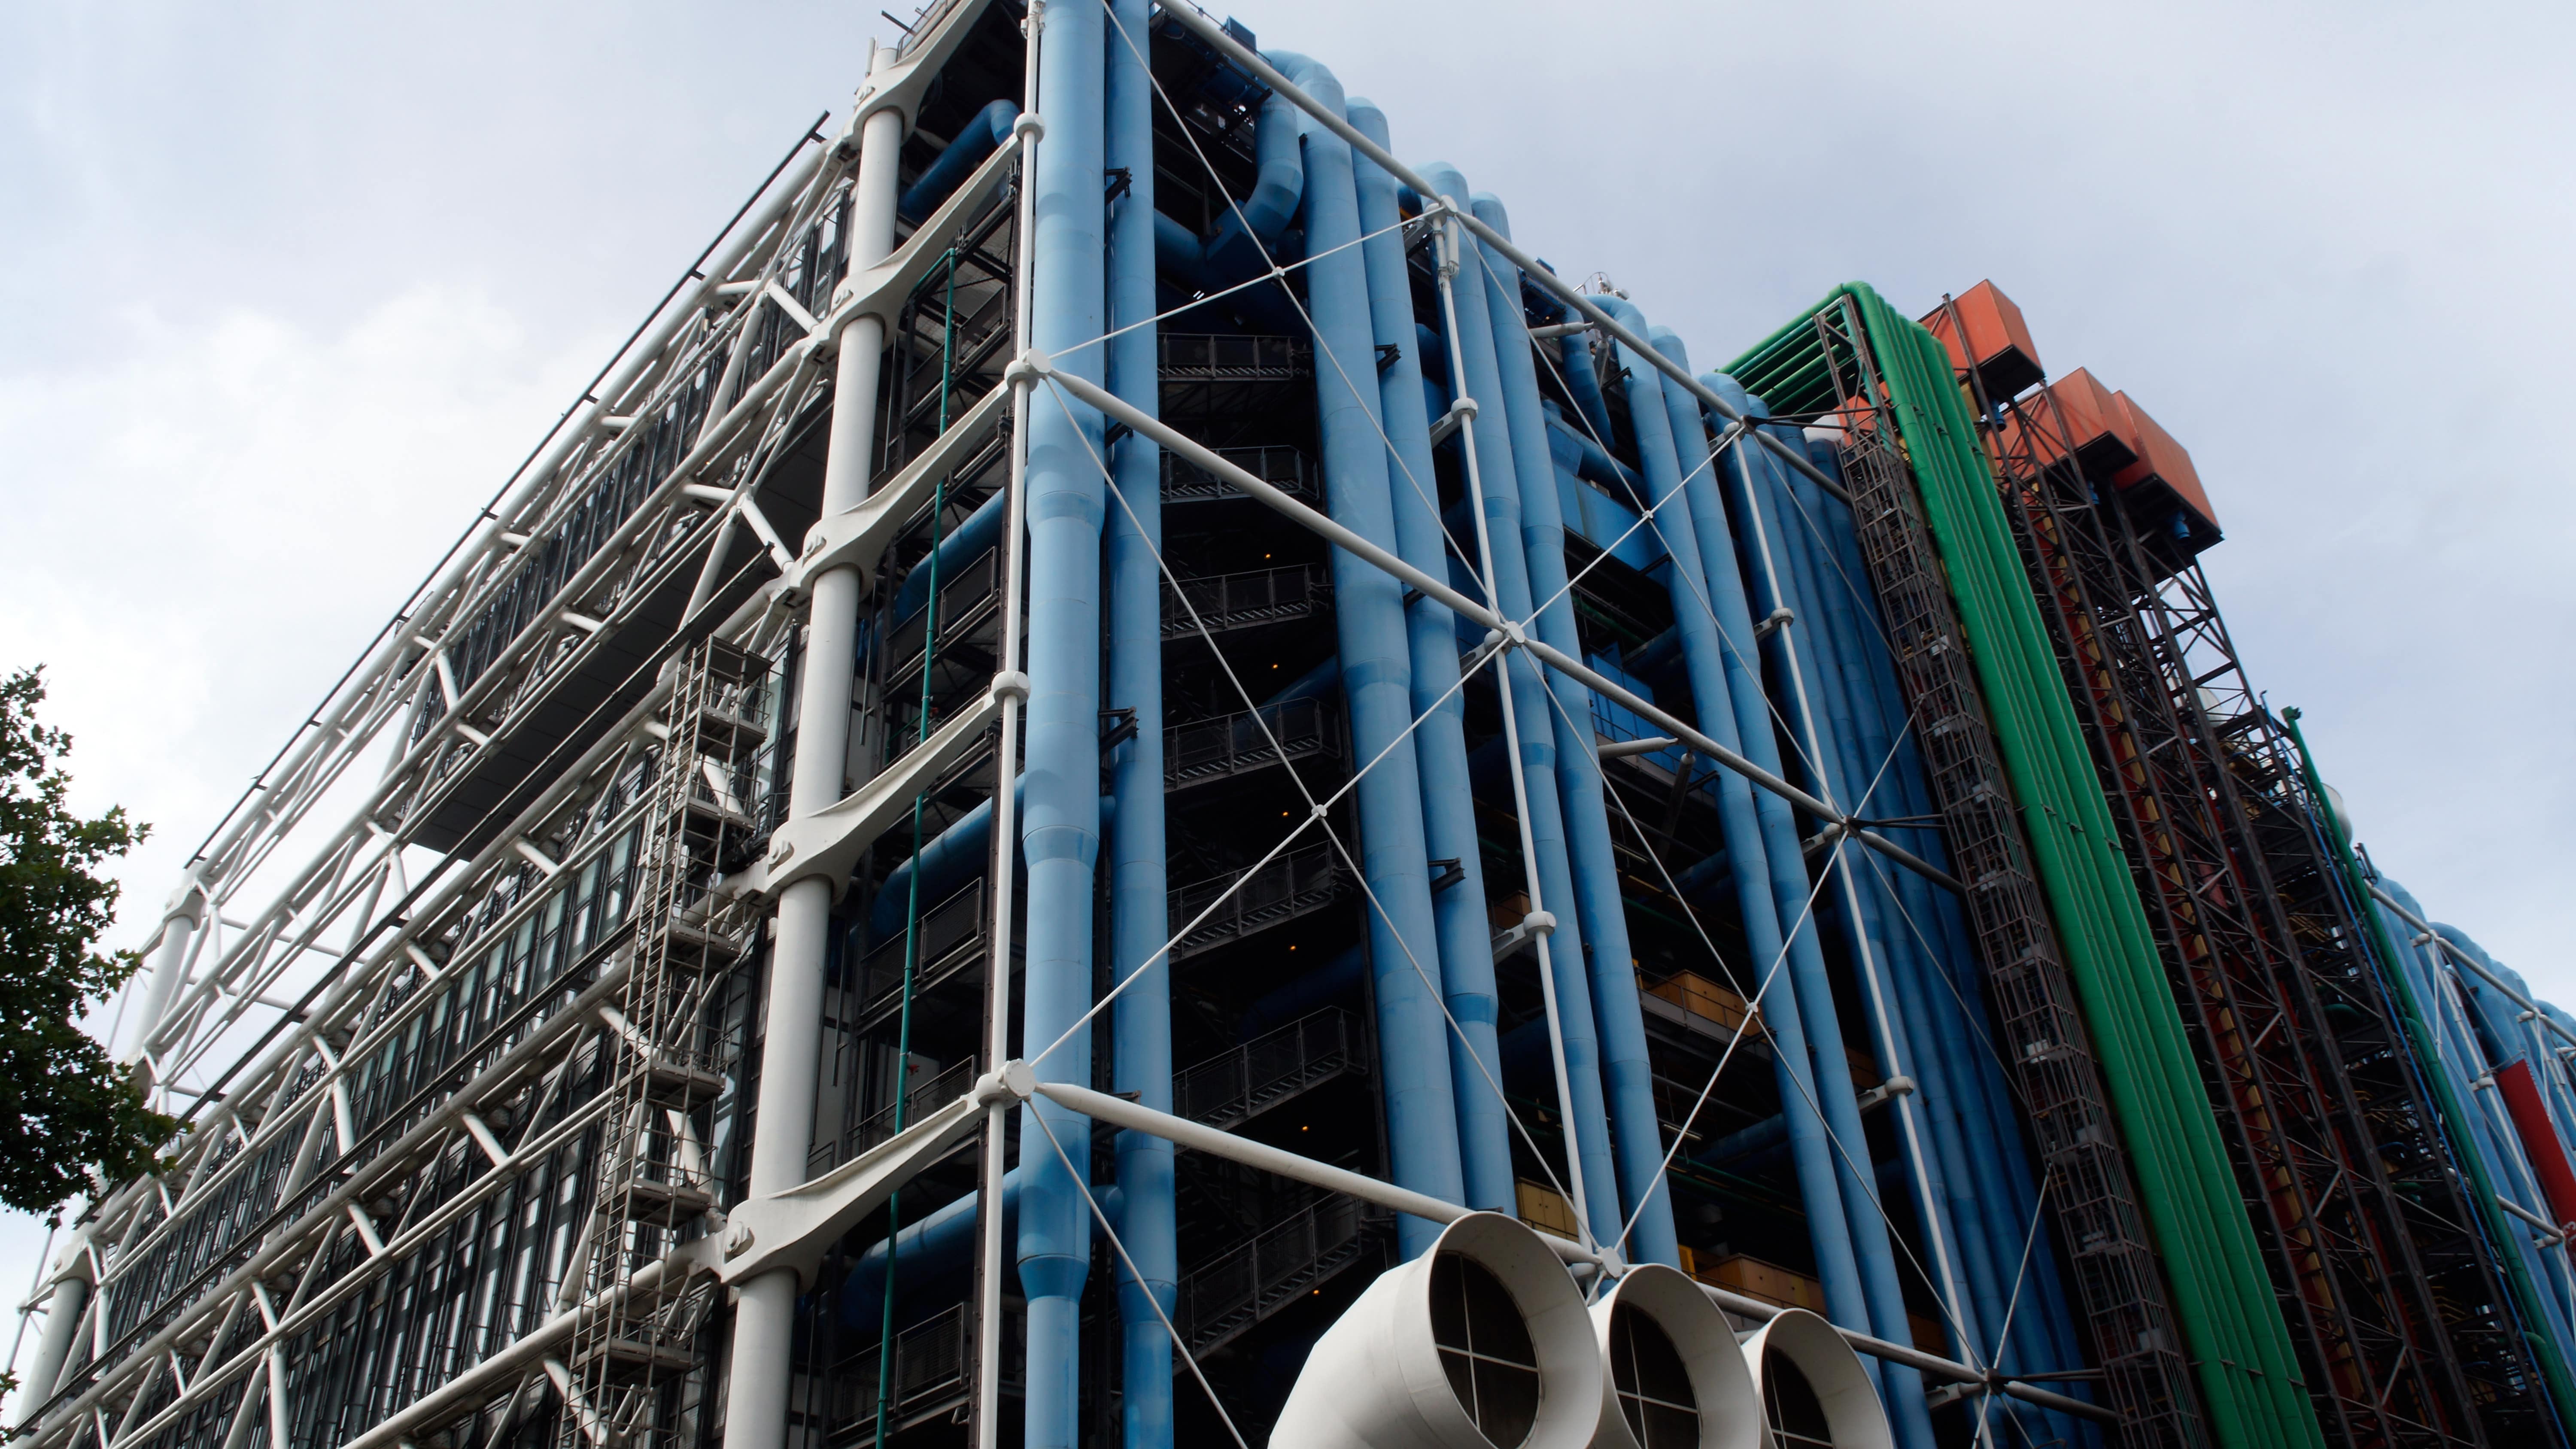 Détail de l’architecture extérieure du centre Pompidou, dans le quartier Beaubourg à Paris